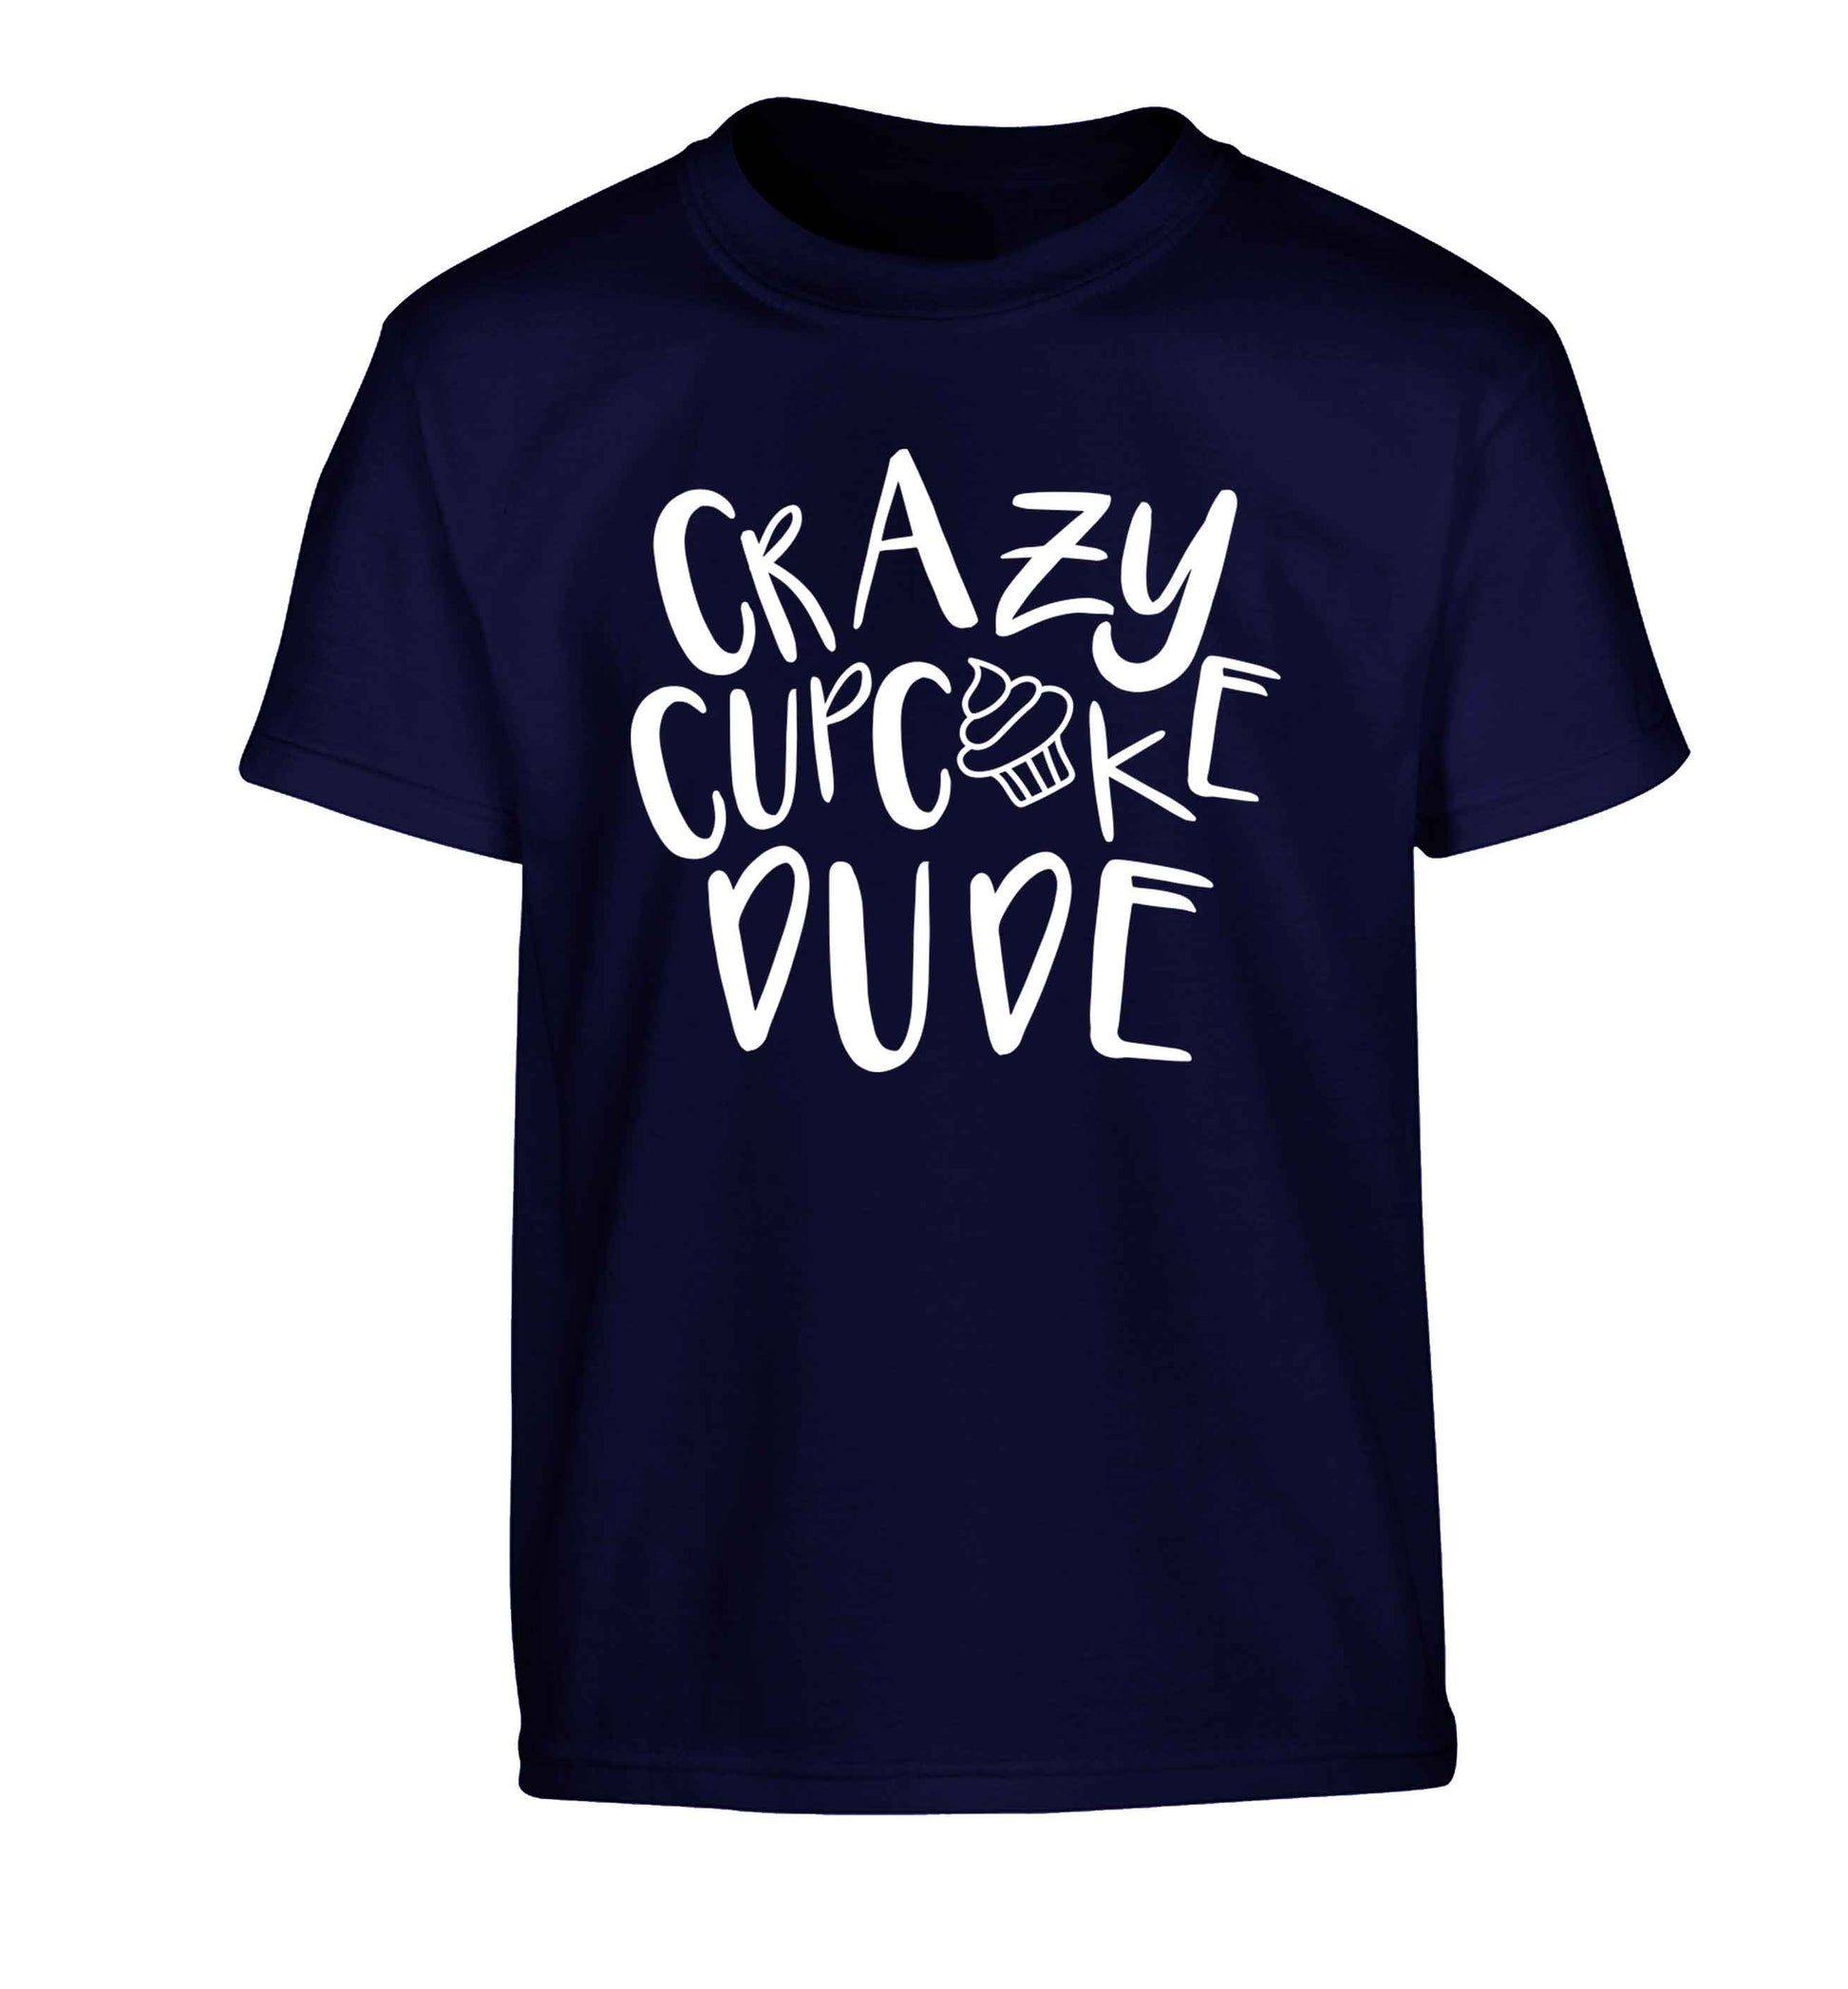 Crazy cupcake dude Children's navy Tshirt 12-13 Years